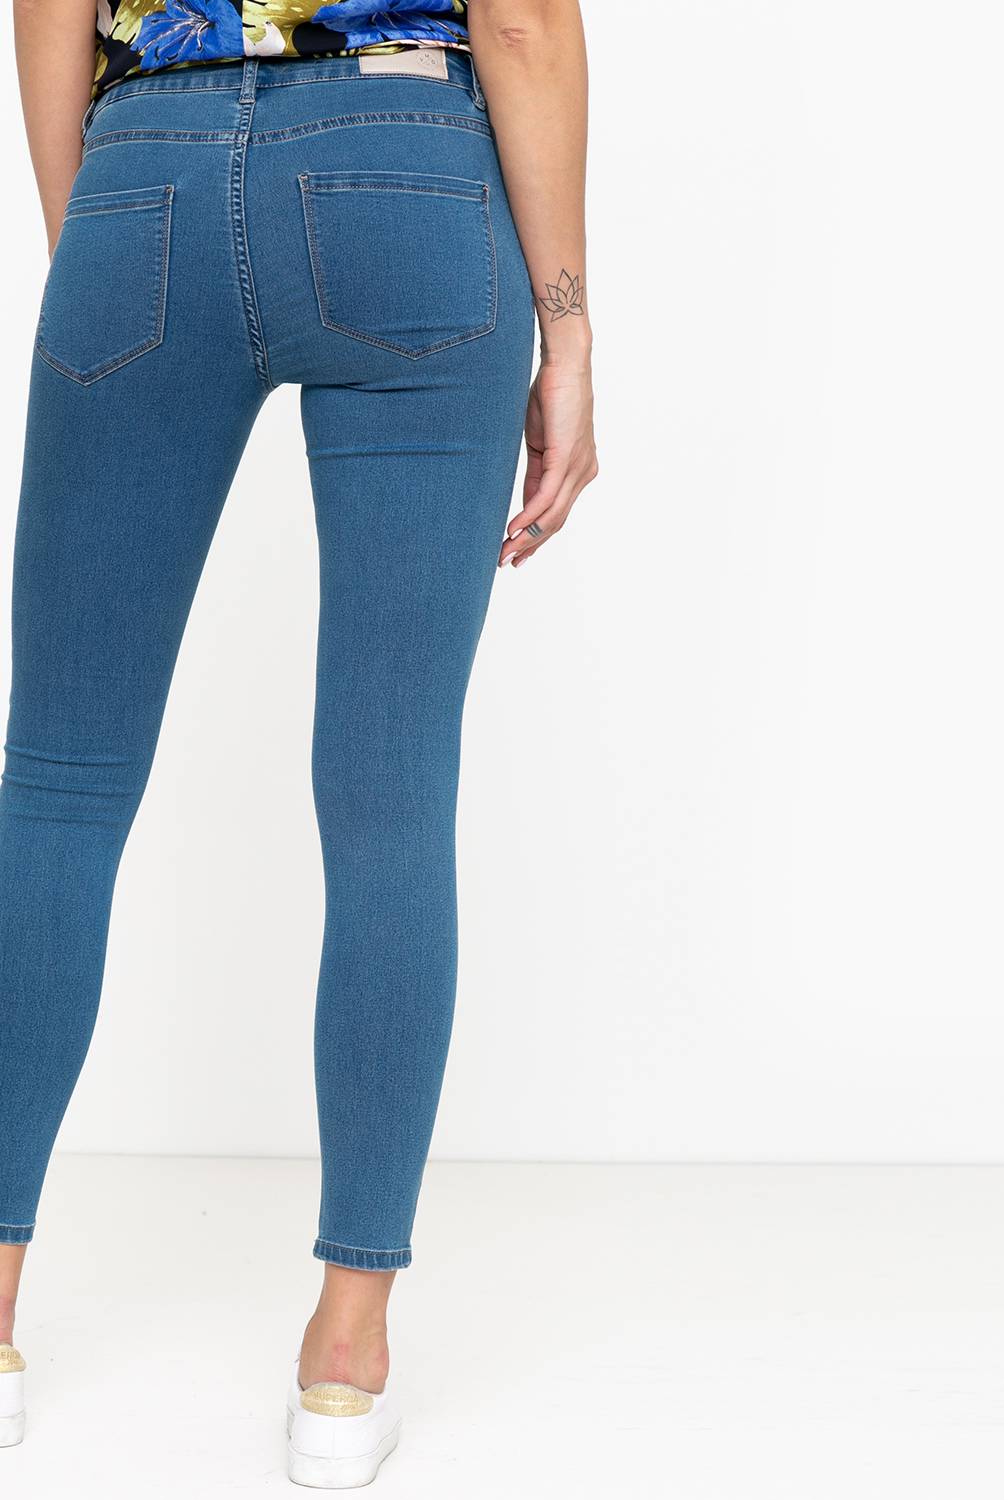 VERO MODA - Jeans Mujer Slim